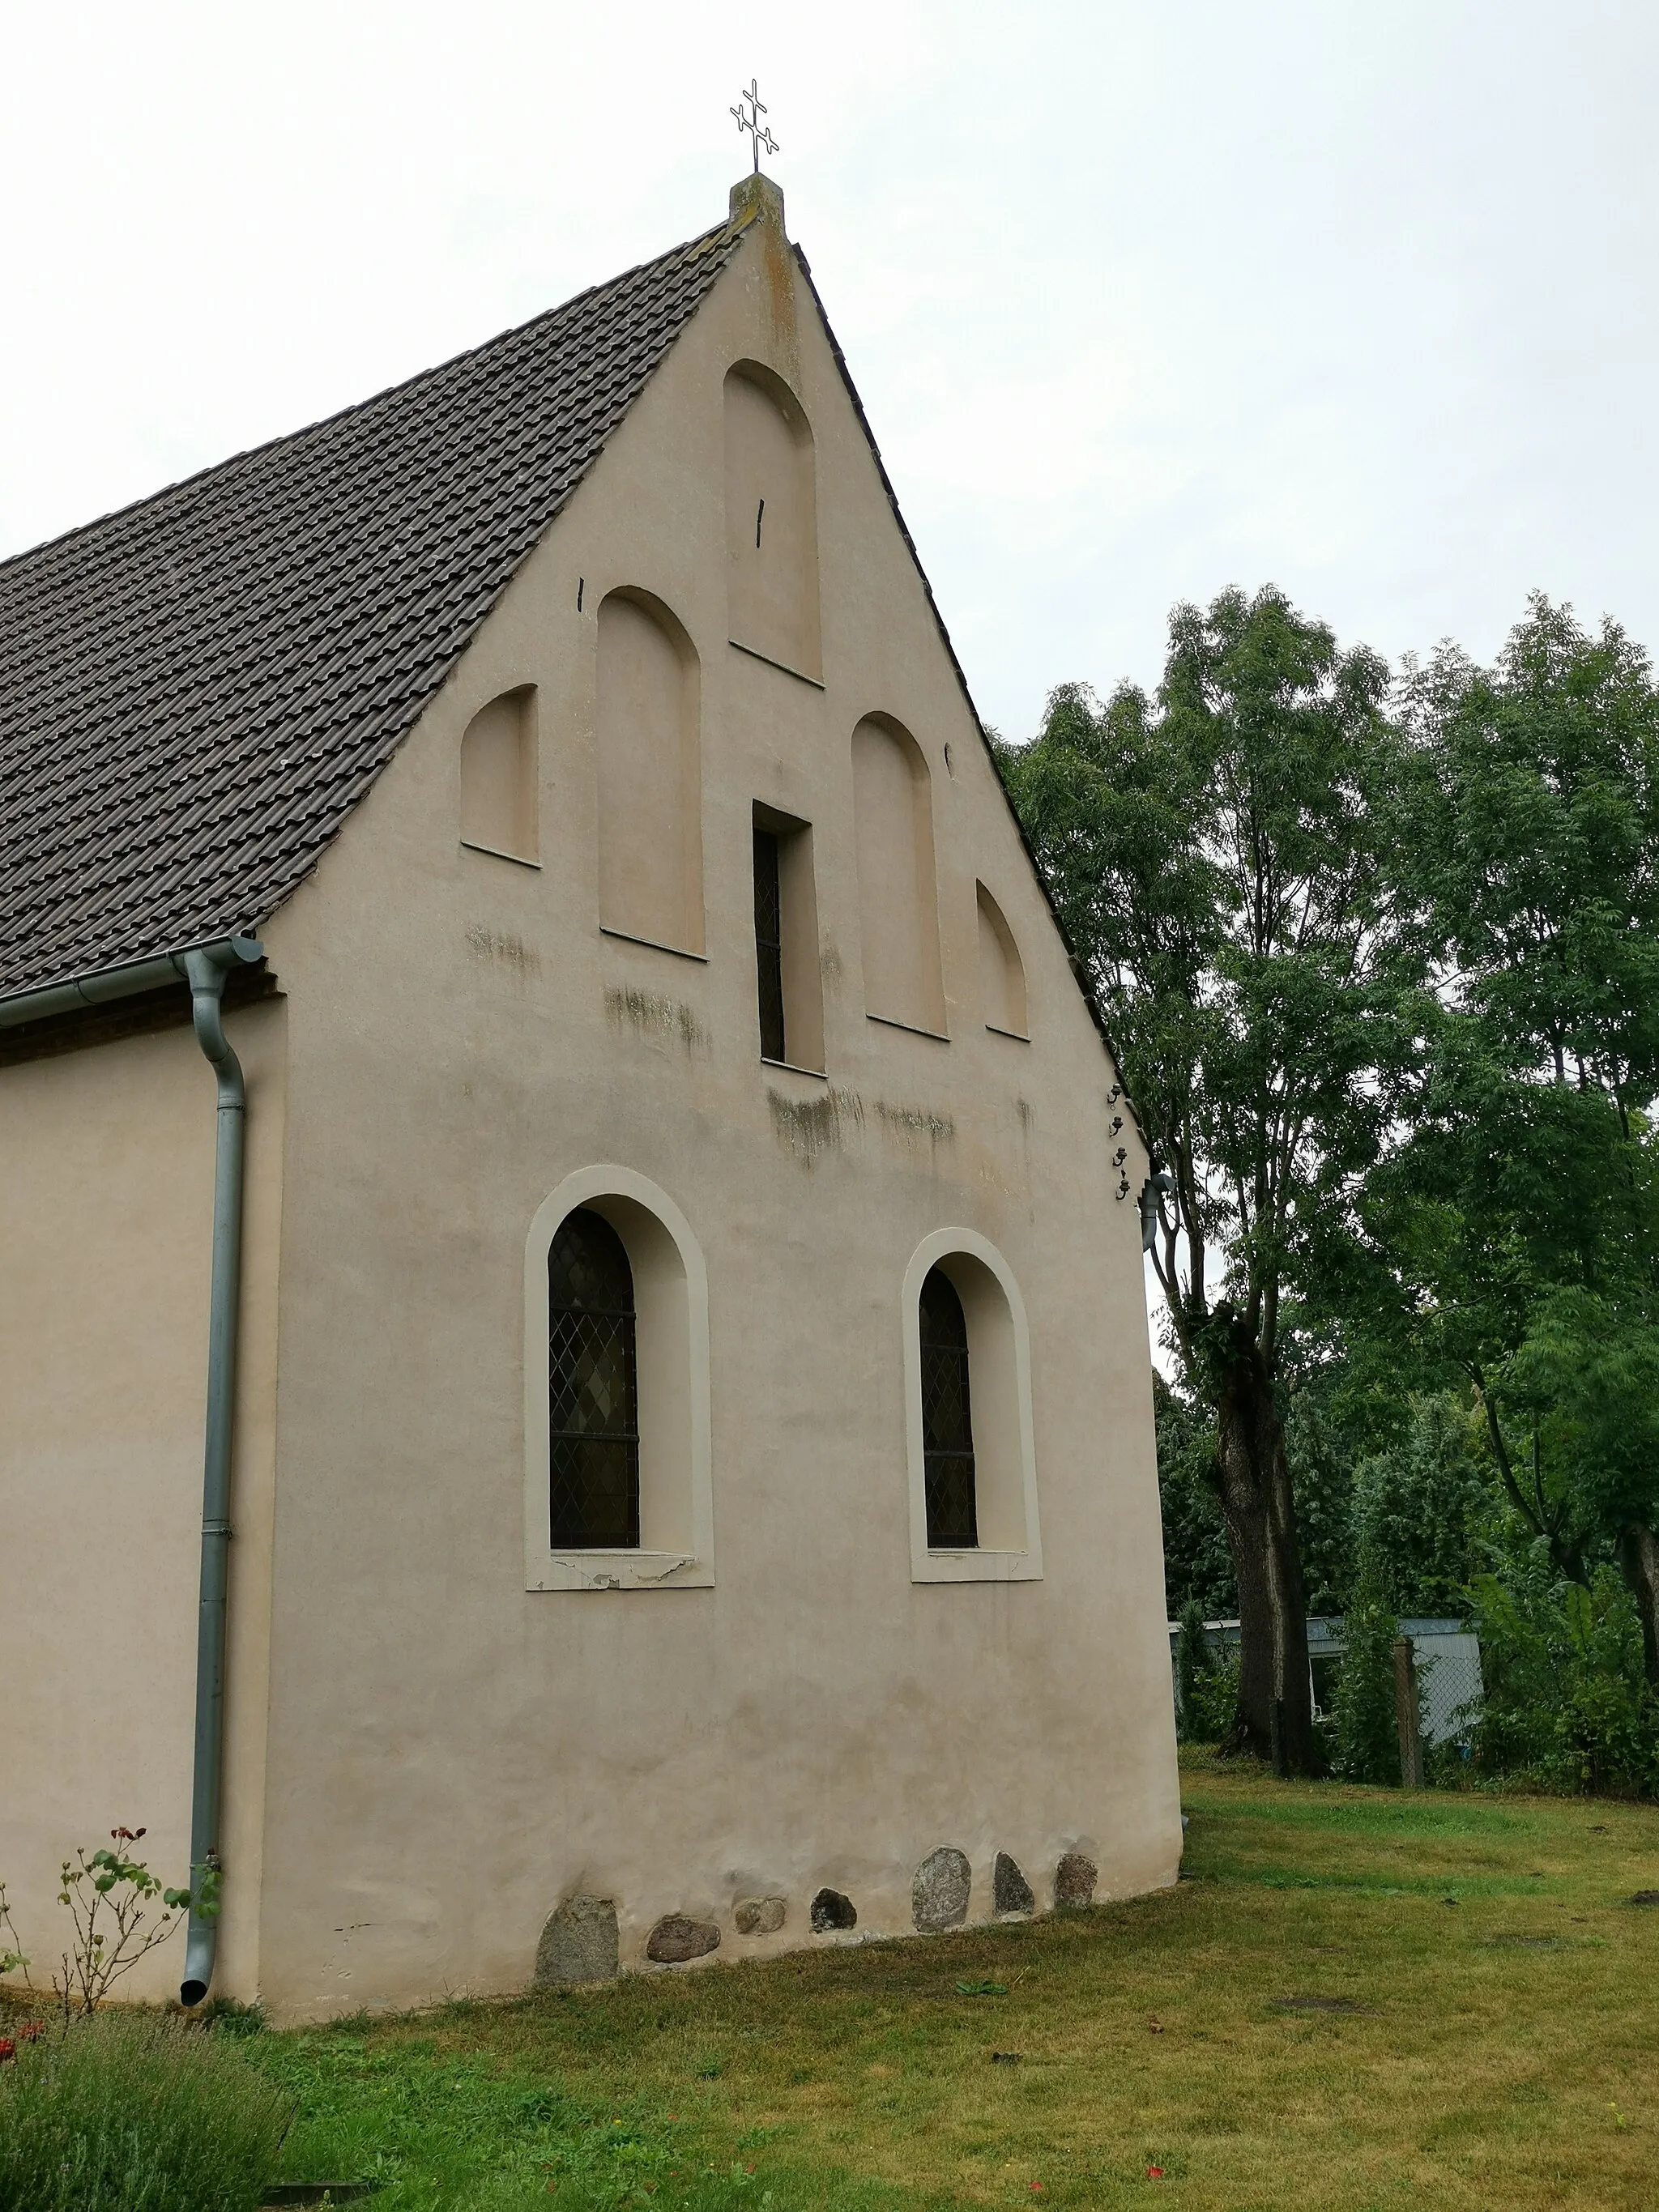 Photo showing: Denkmalgeschütztes Ensemble bestehend aus Kirche, Glockenturm und Kriegerdenkmal in Groß Oßnig